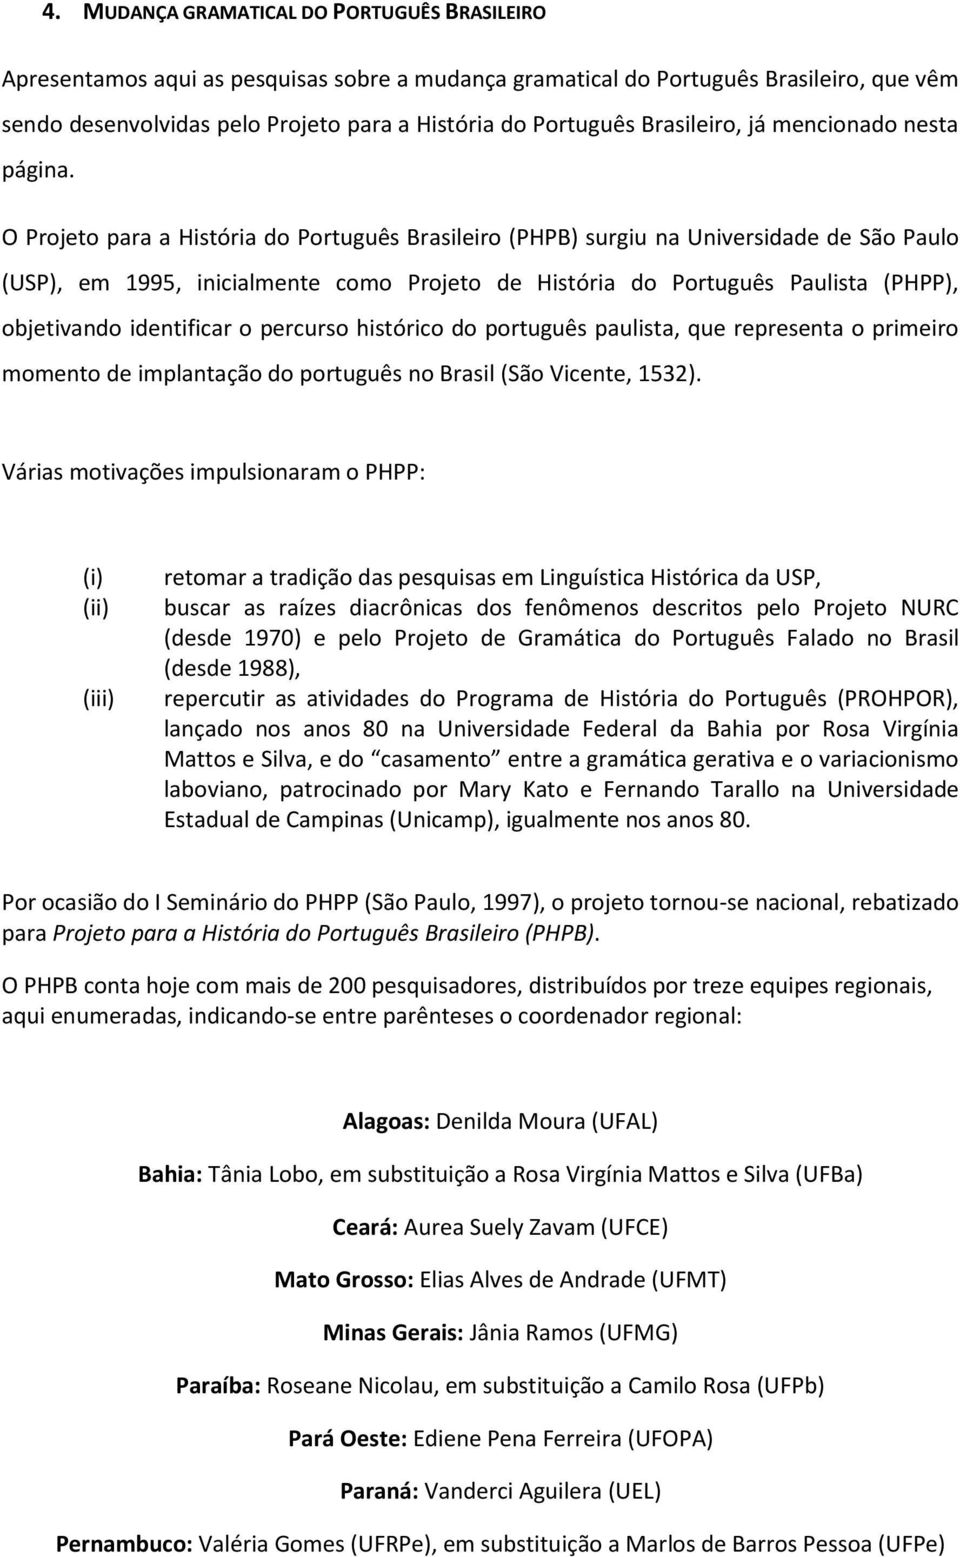 O Projeto para a História do Português Brasileiro (PHPB) surgiu na Universidade de São Paulo (USP), em 1995, inicialmente como Projeto de História do Português Paulista (PHPP), objetivando